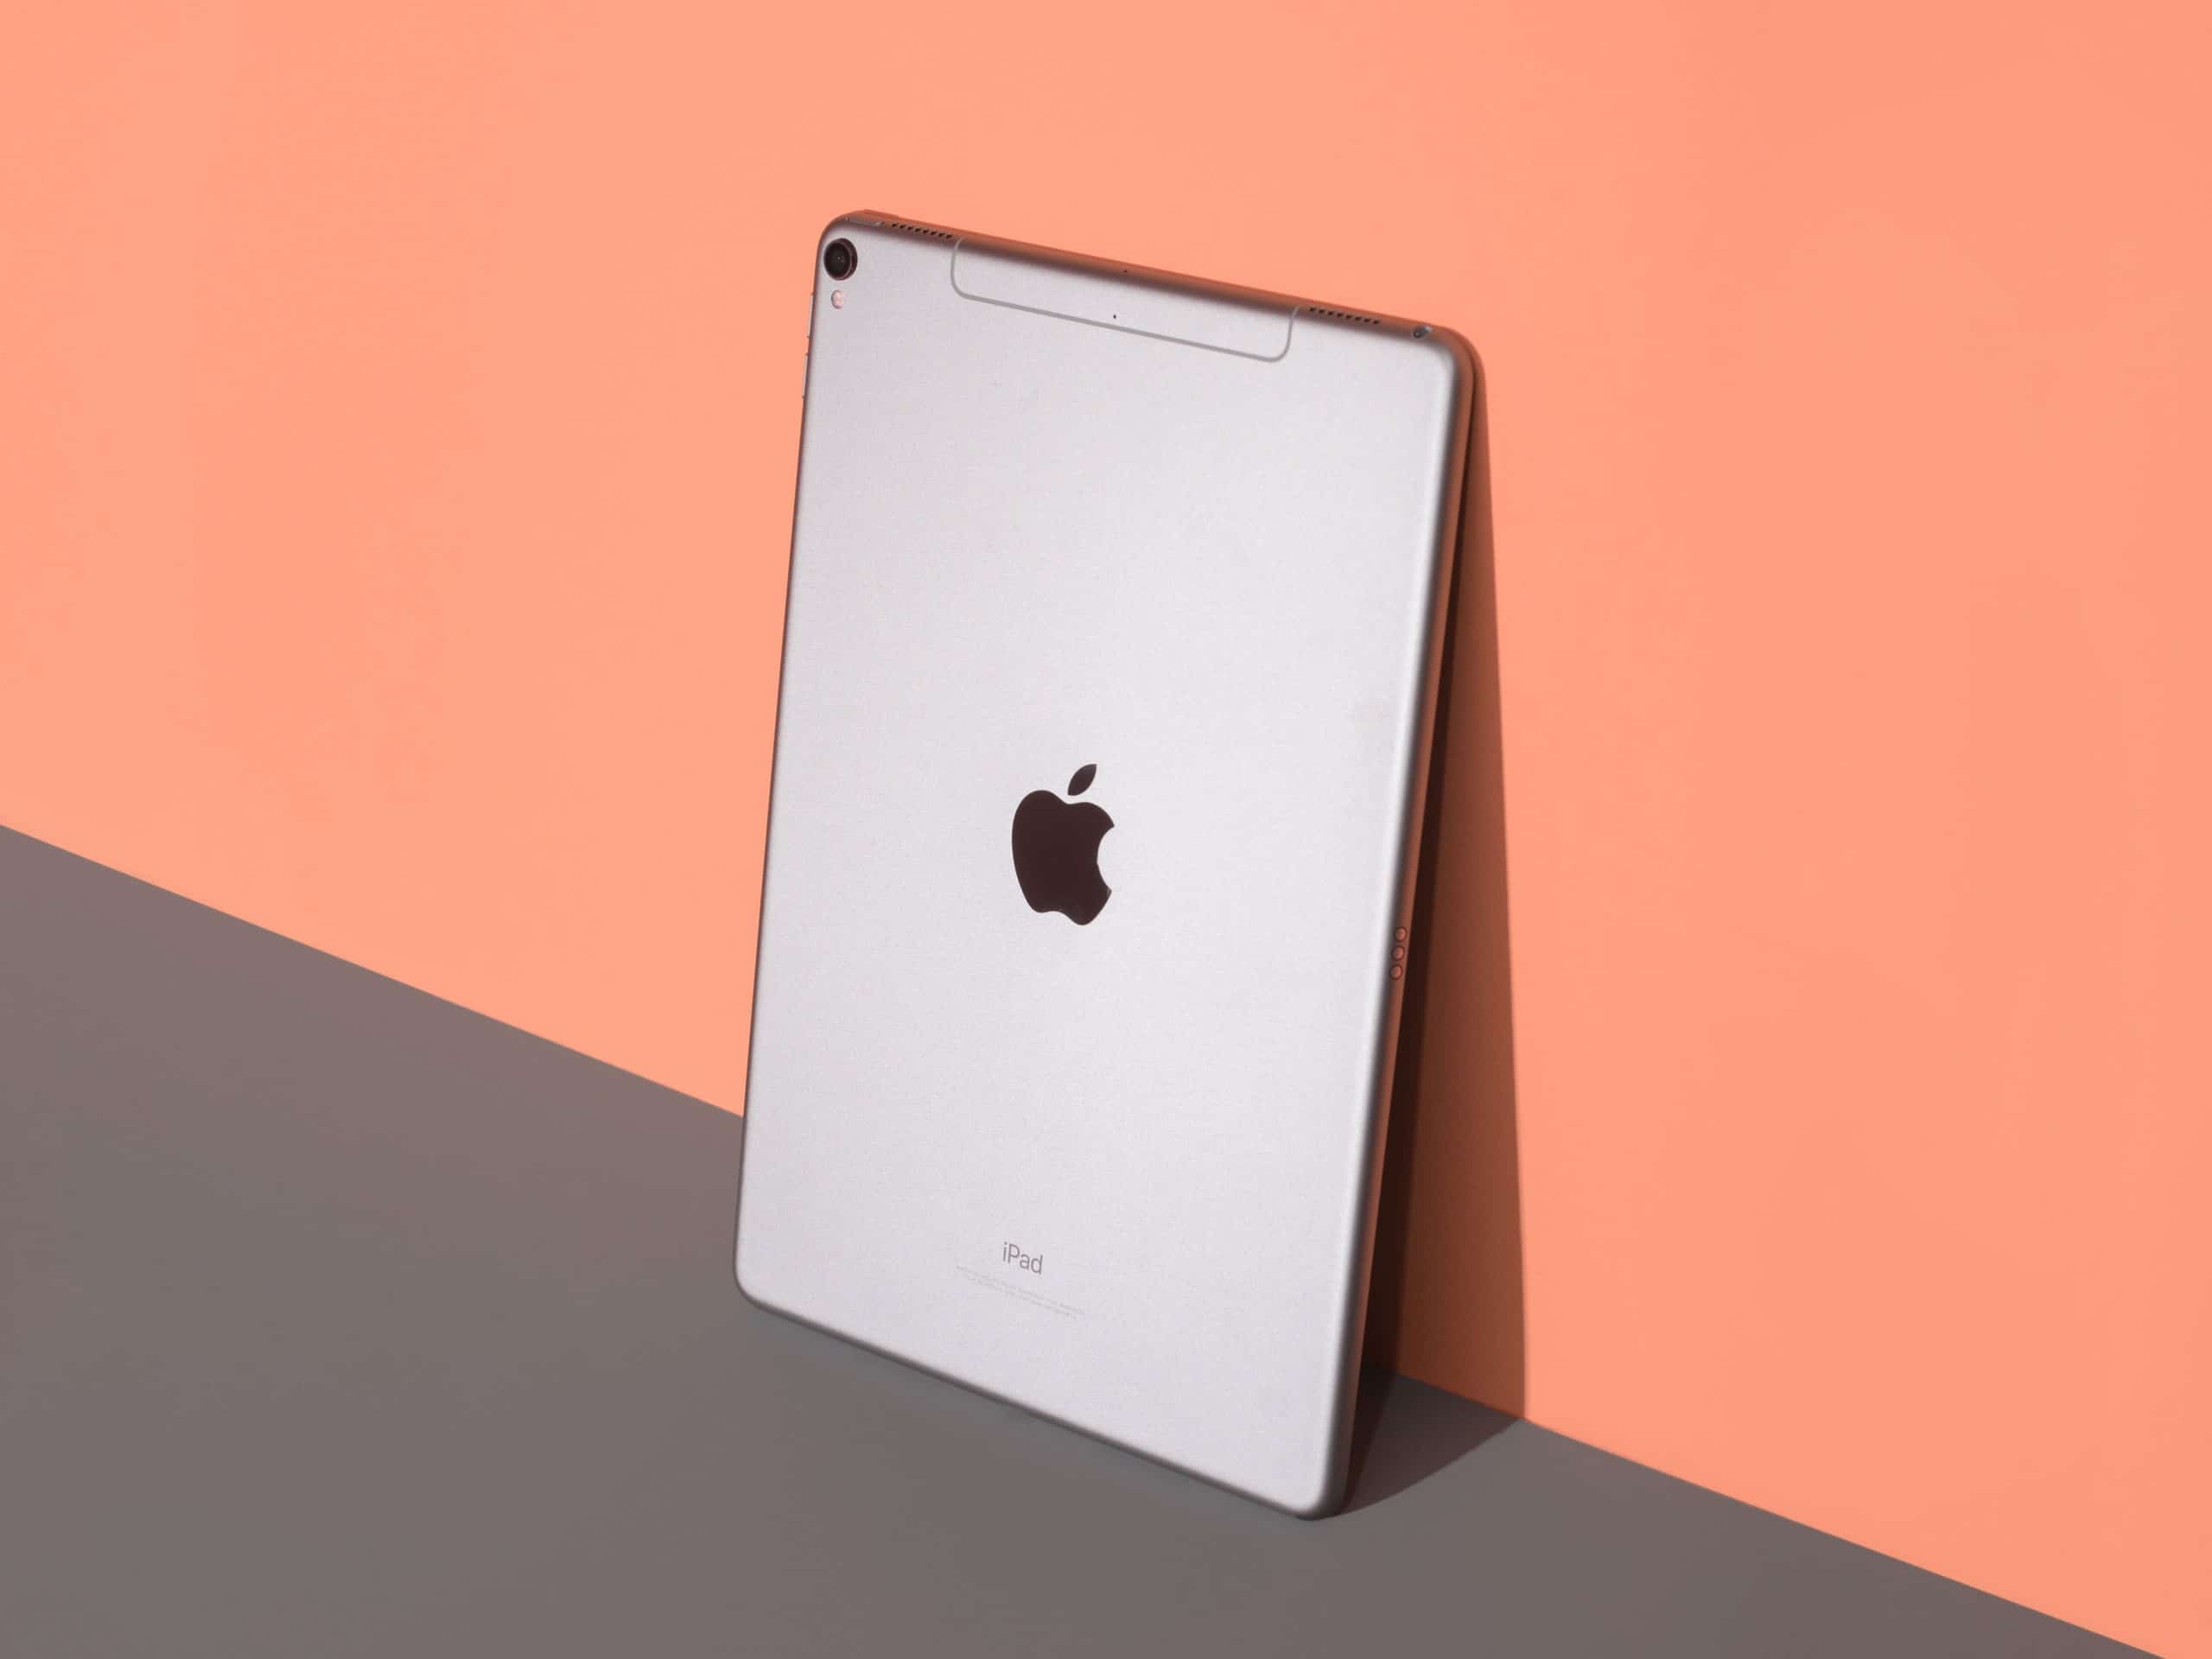 iPad tương lai có thể sẽ có khung hợp kim Titan bền bỉ